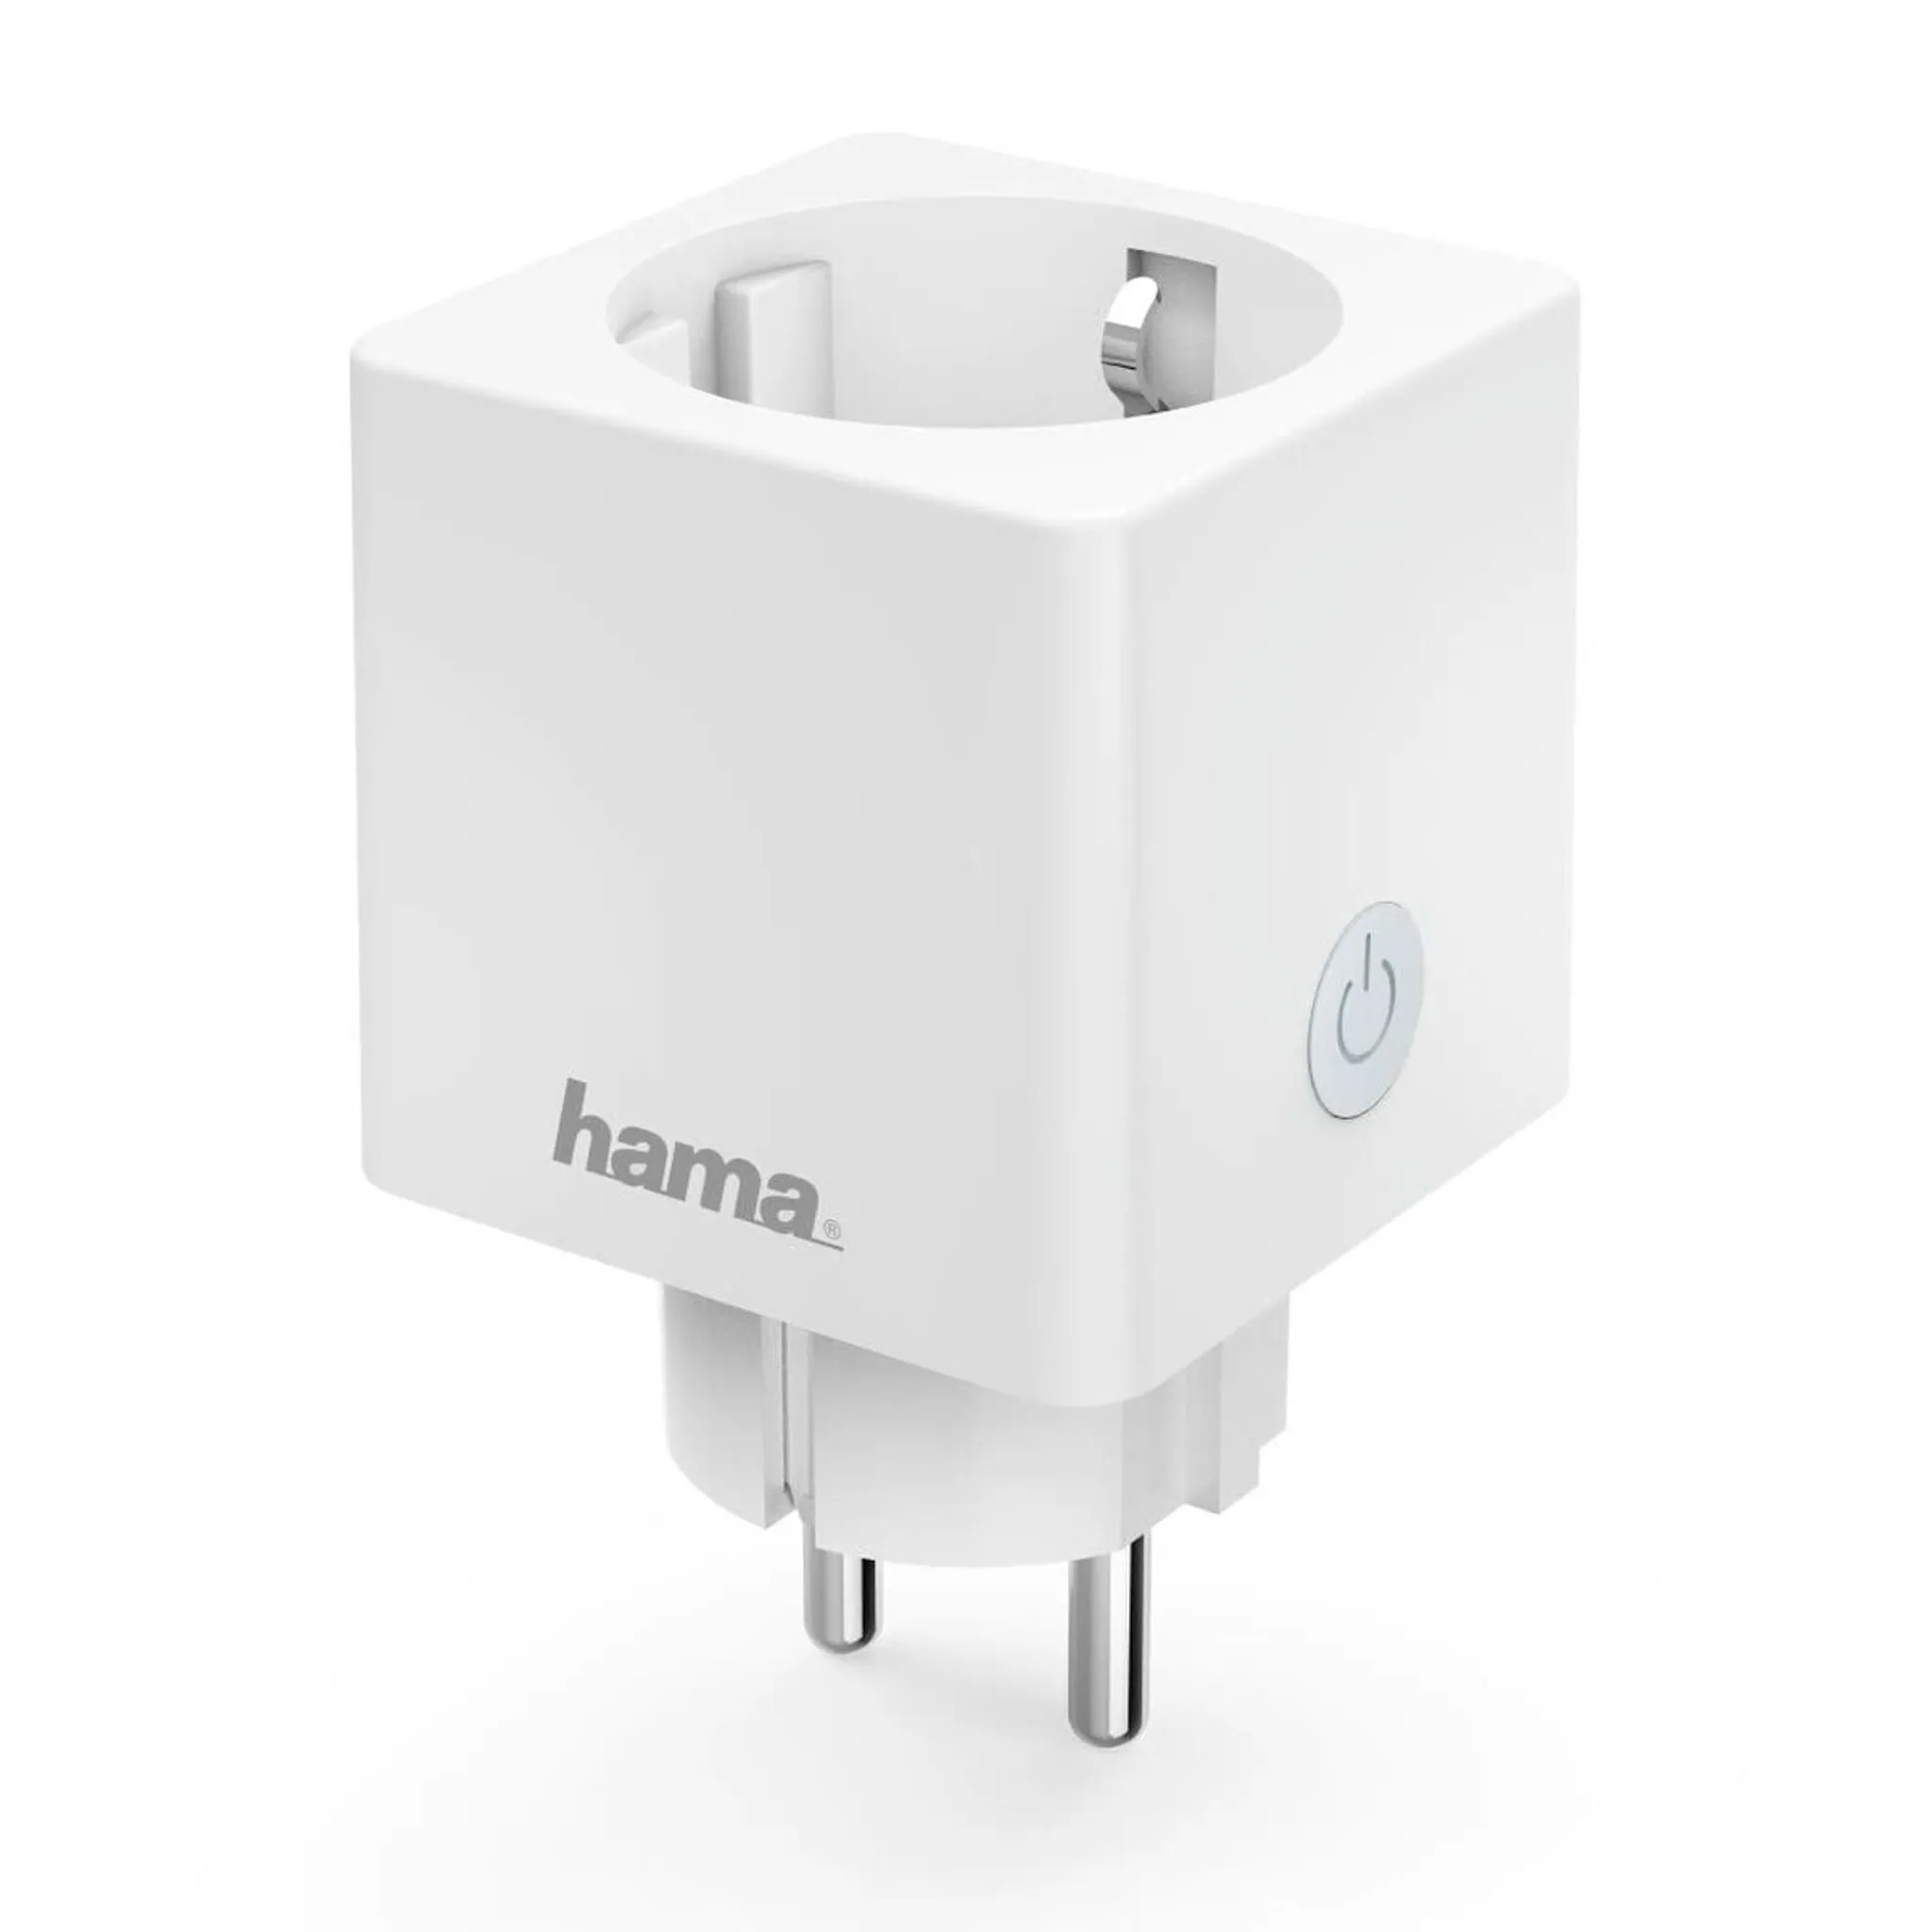 Hama WLAN-Steckdose Mini ohne 3680W/16A Hub